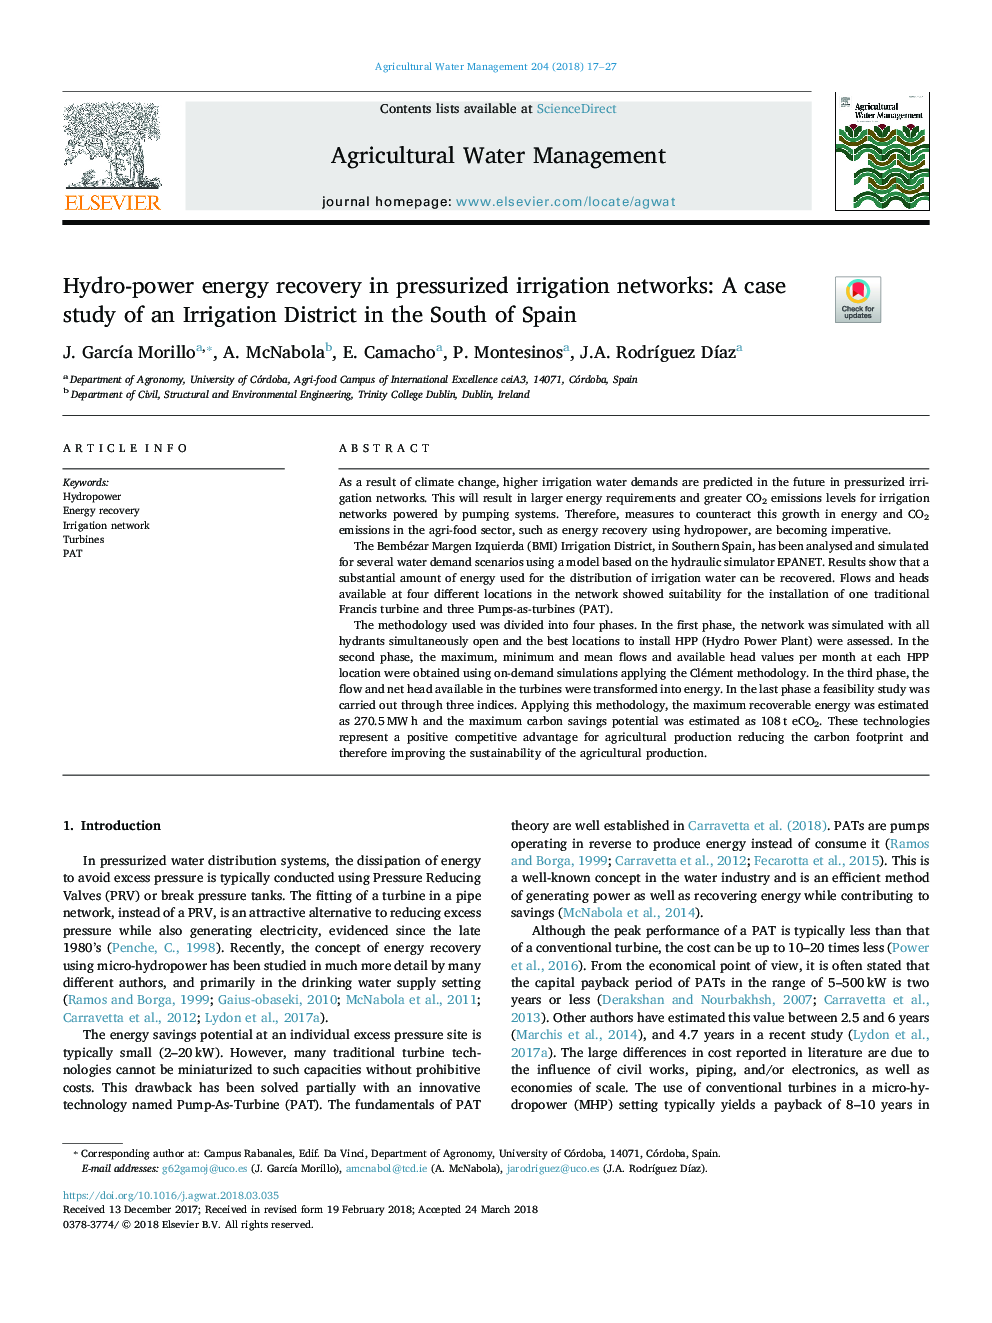 بازیابی انرژی هیدرولیکی در شبکه های آبیاری تحت فشار: مطالعه موردی منطقه آبیاری در جنوب اسپانیا 